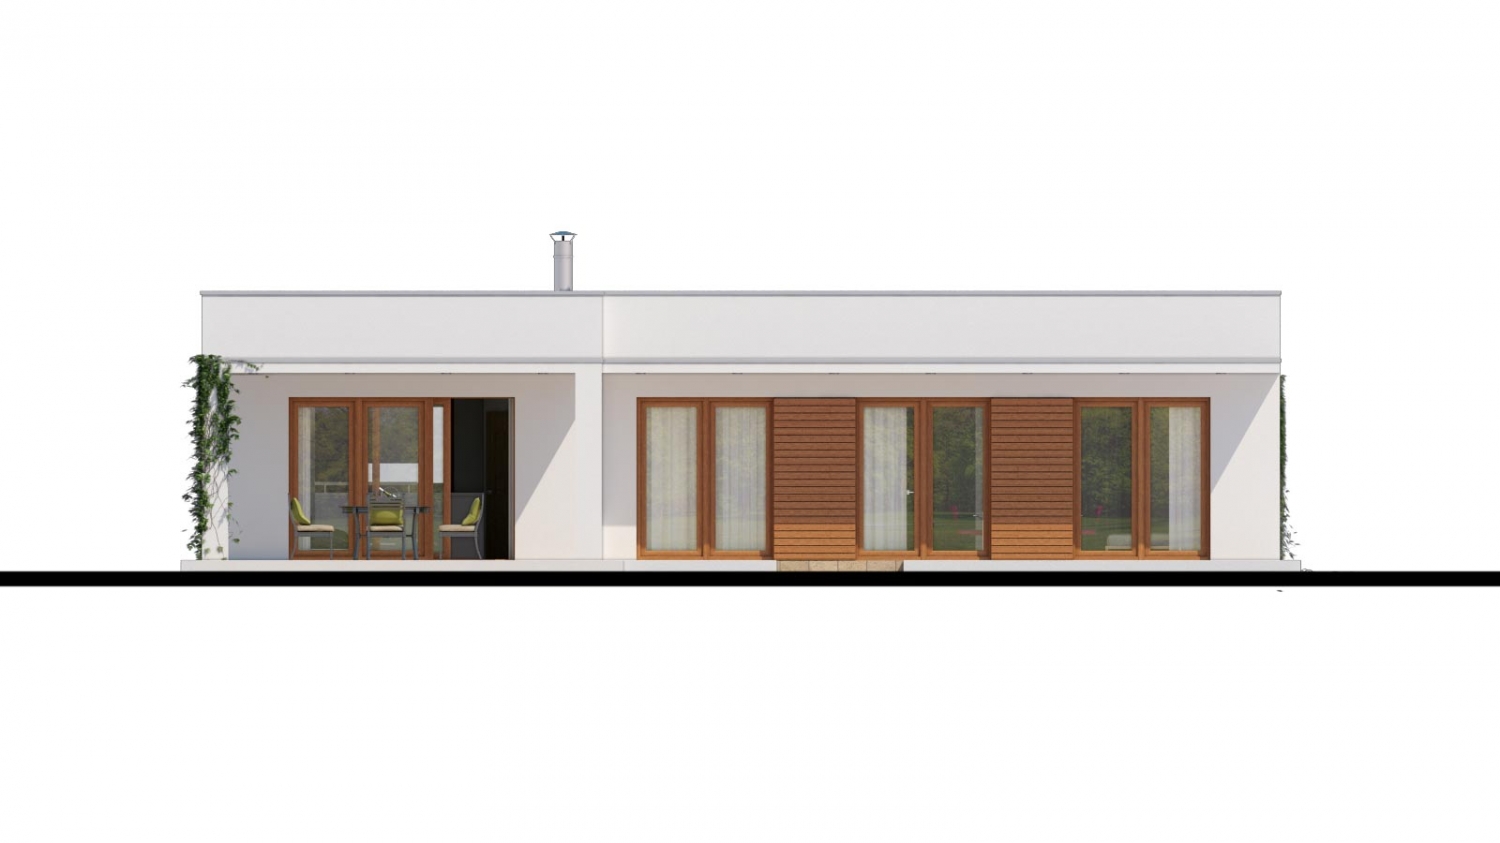 Zrkadlový pohľad 3. - Luxusní 4 - pokojový rodinný dům s plochou rovnou střechou a krytým stáním. Obytná část je orientována do zahrady na terasu.